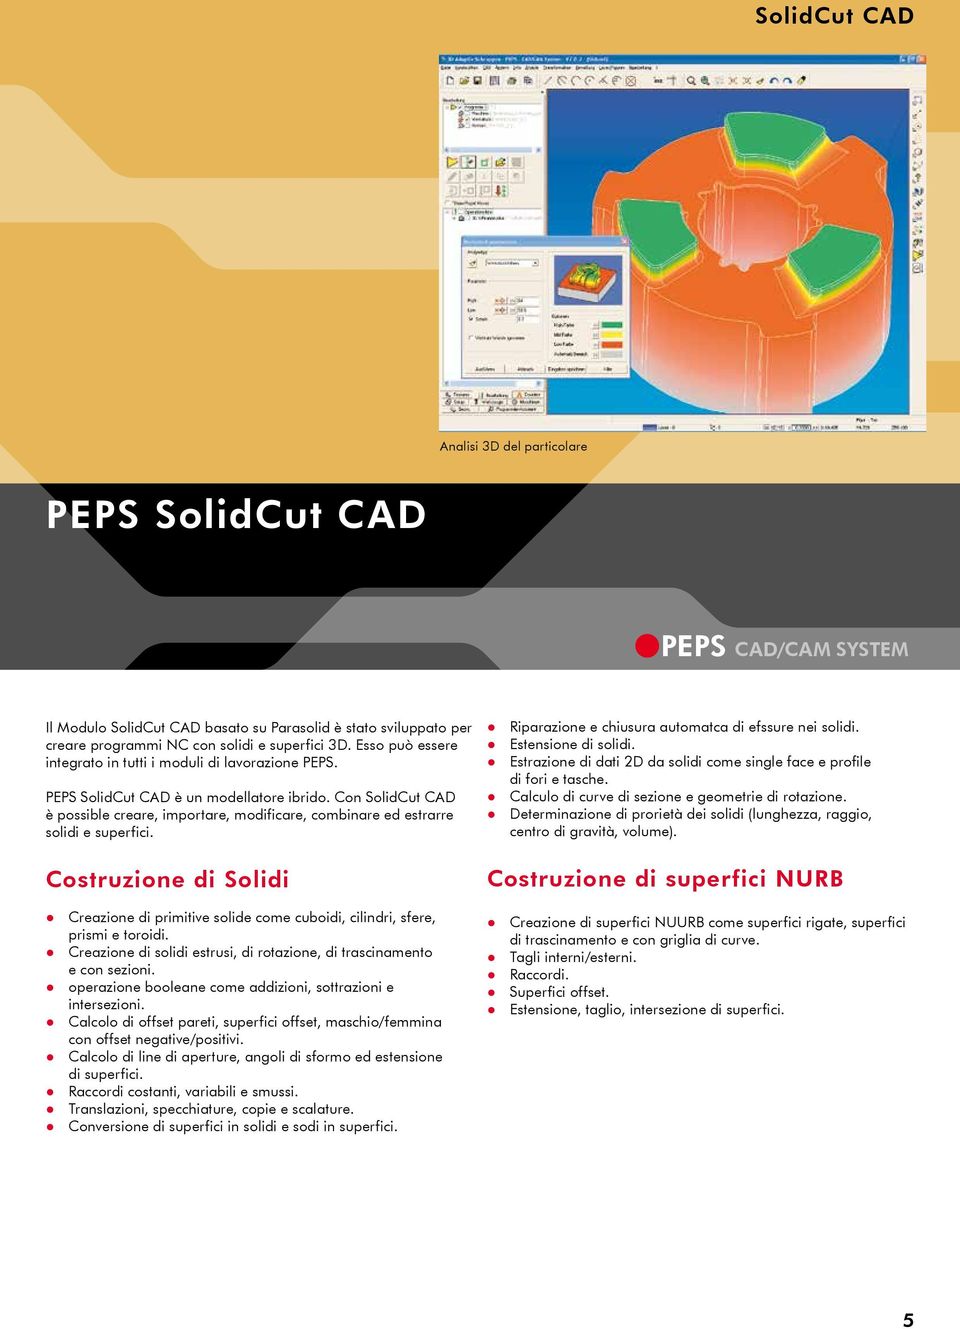 Con SolidCut CAD è possible creare, importare, modificare, combinare ed estrarre solidi e superfici.